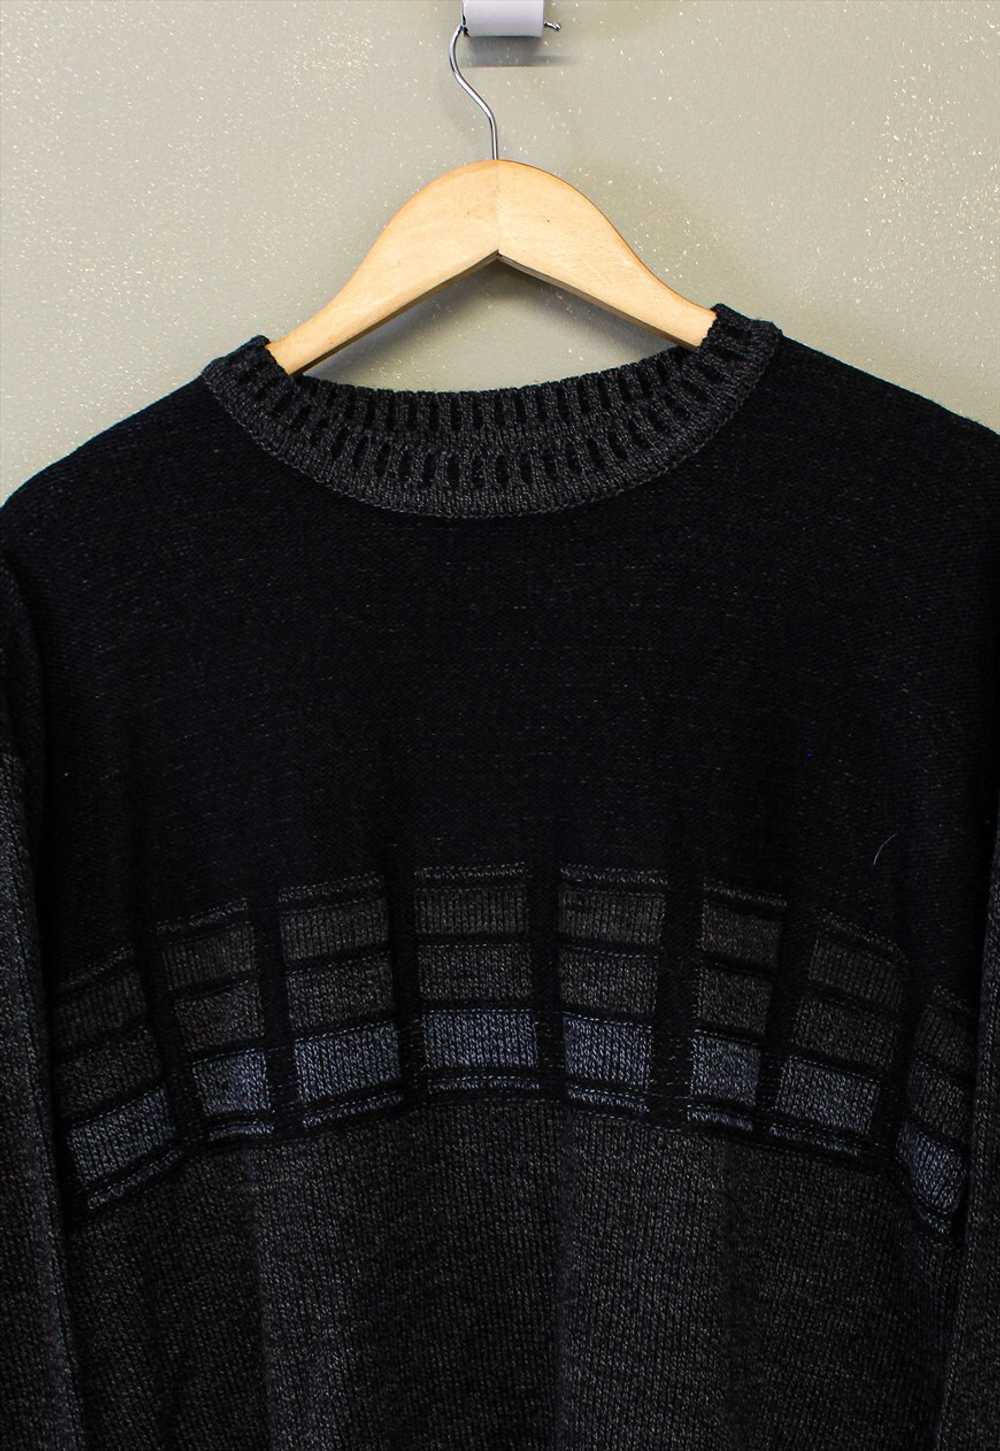 Vintage Knit Jumper Black With Patterns - image 2